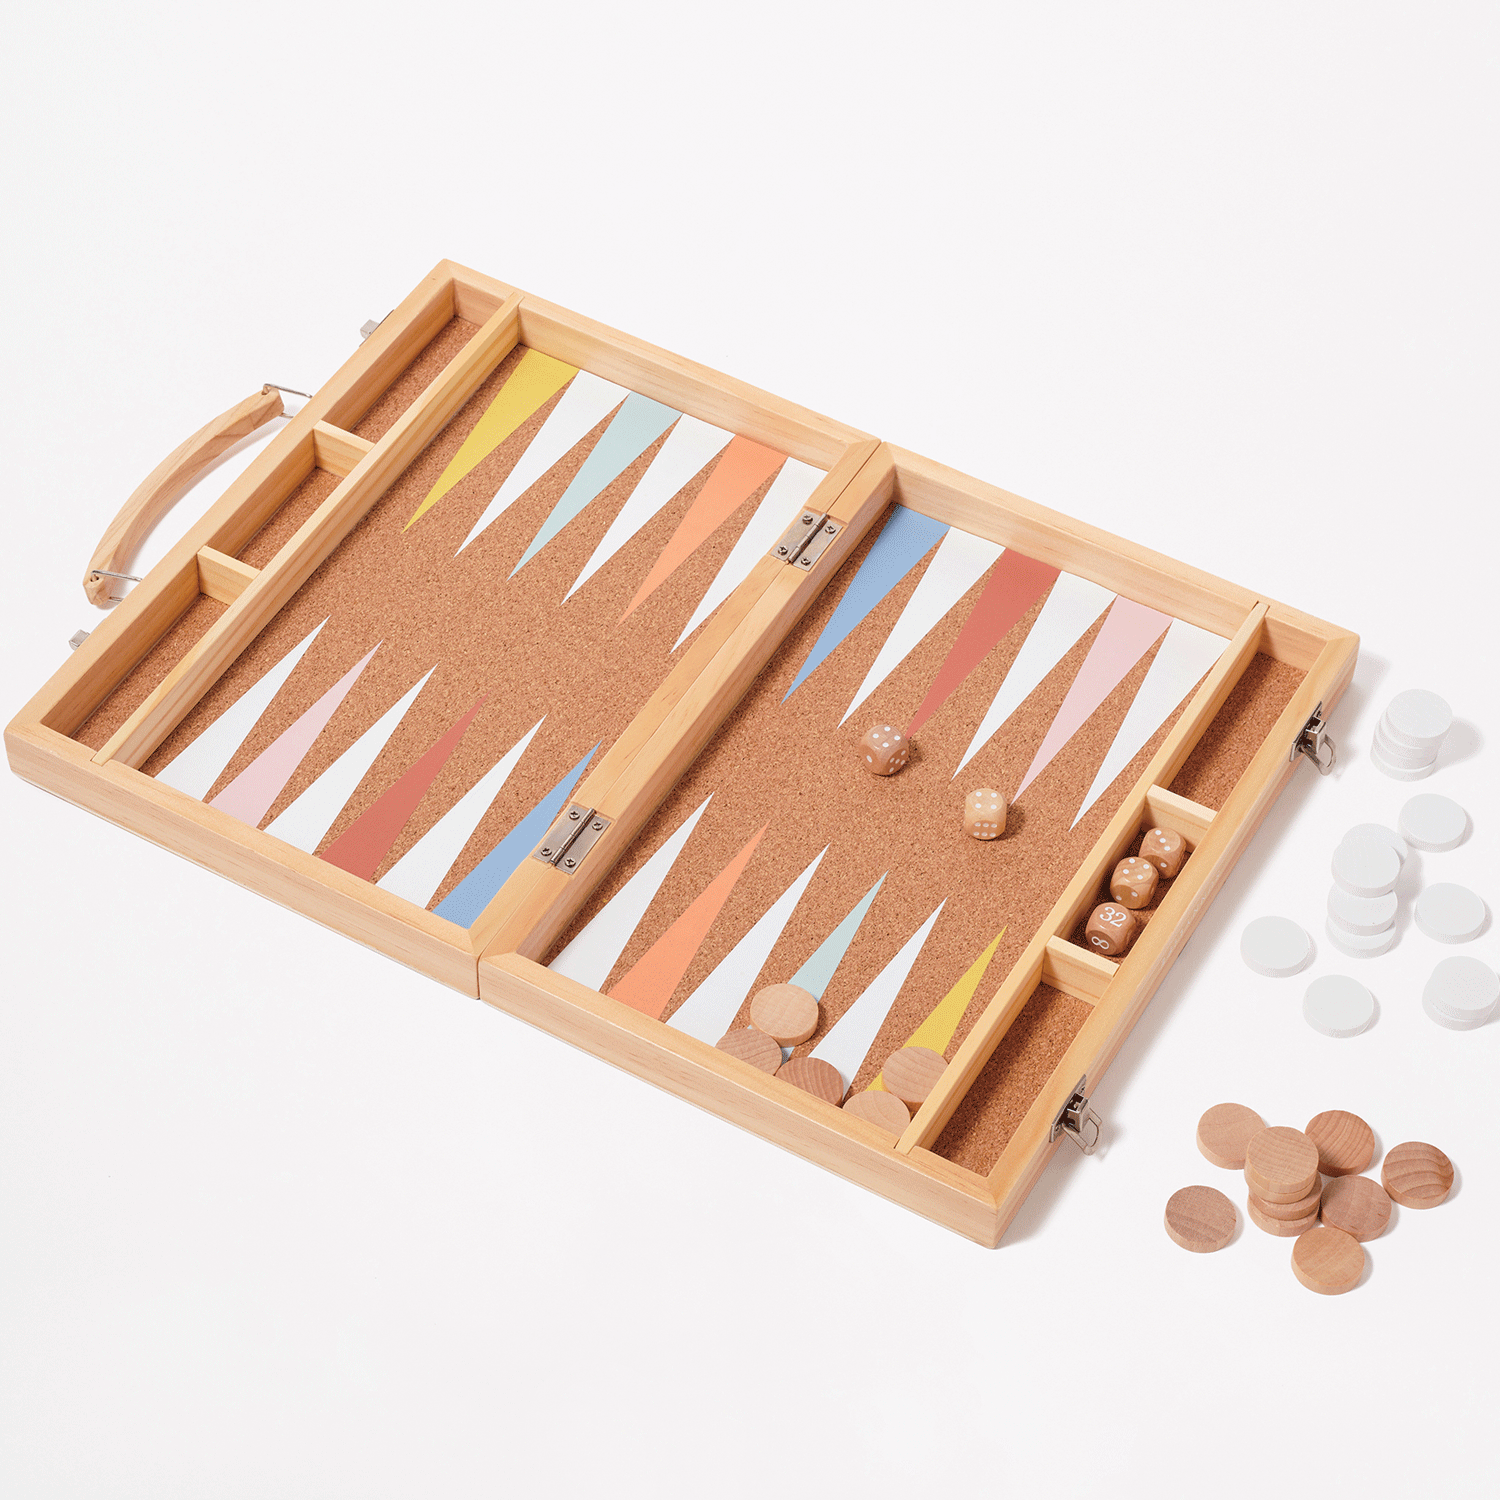 Wooden Backgammon | Majorelle